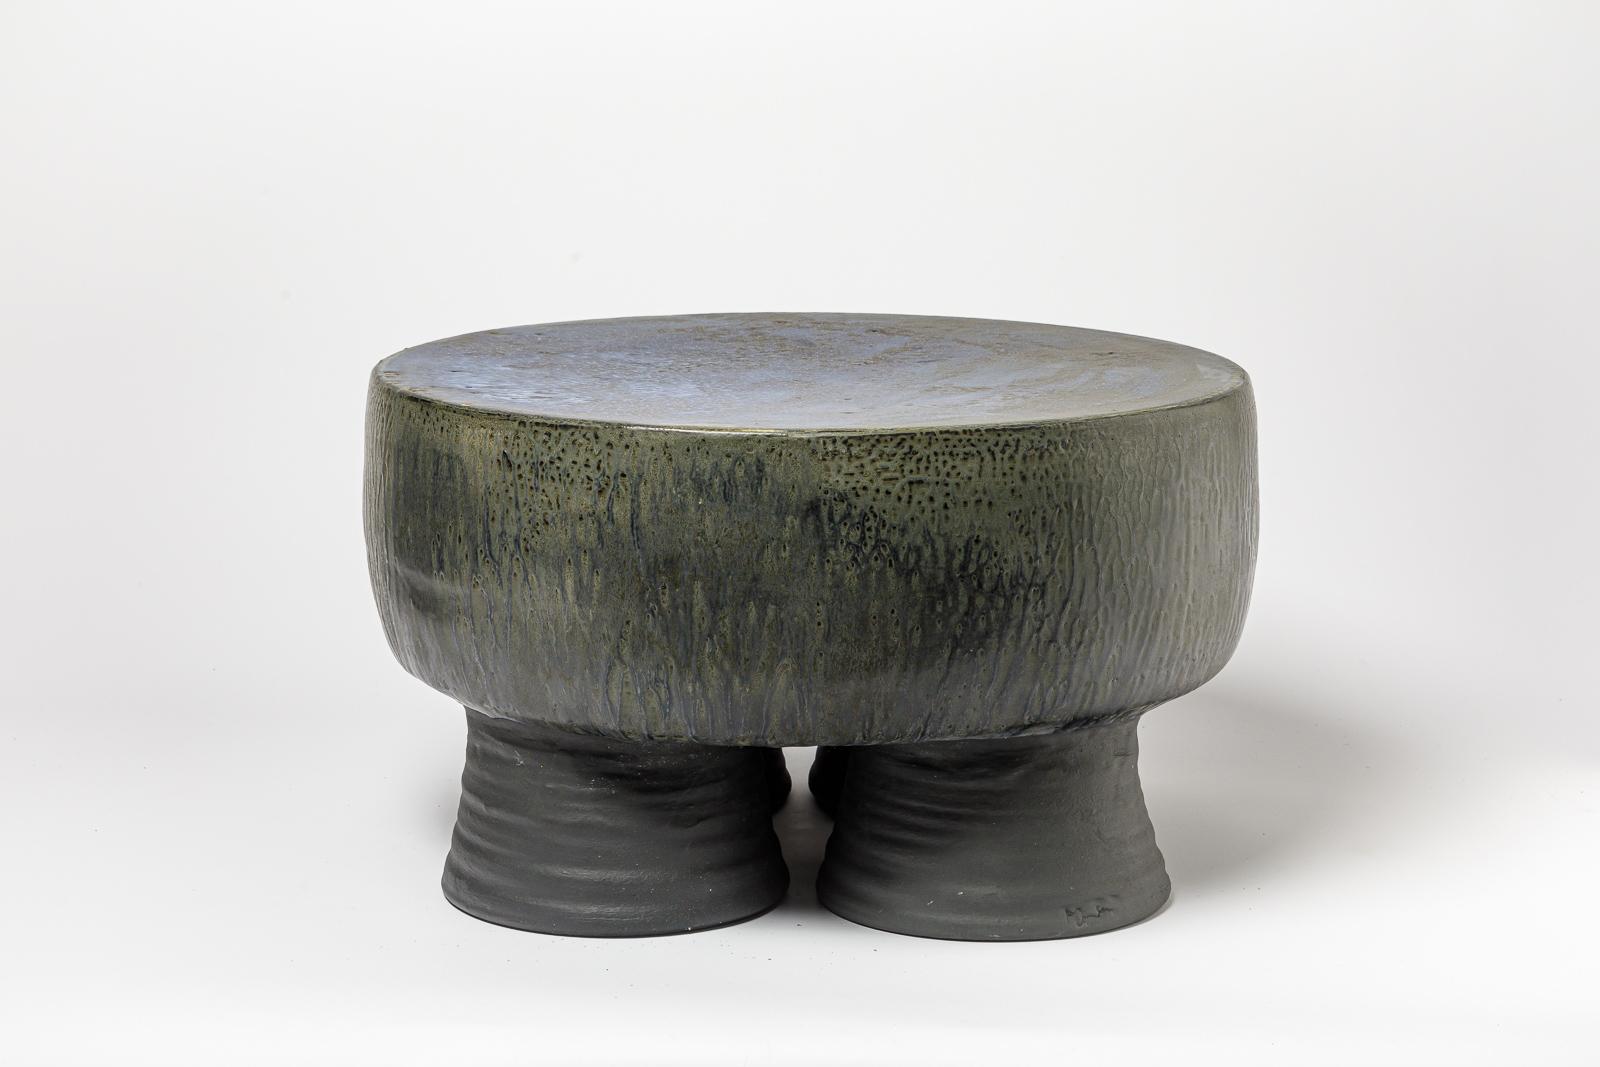 Tabouret ou table basse en céramique émaillée noir/bleu et gris/vert de Mia Jensen. 
Signature de l'artiste sous la base. 2023.
H : 12.2' x 21.3' pouces.